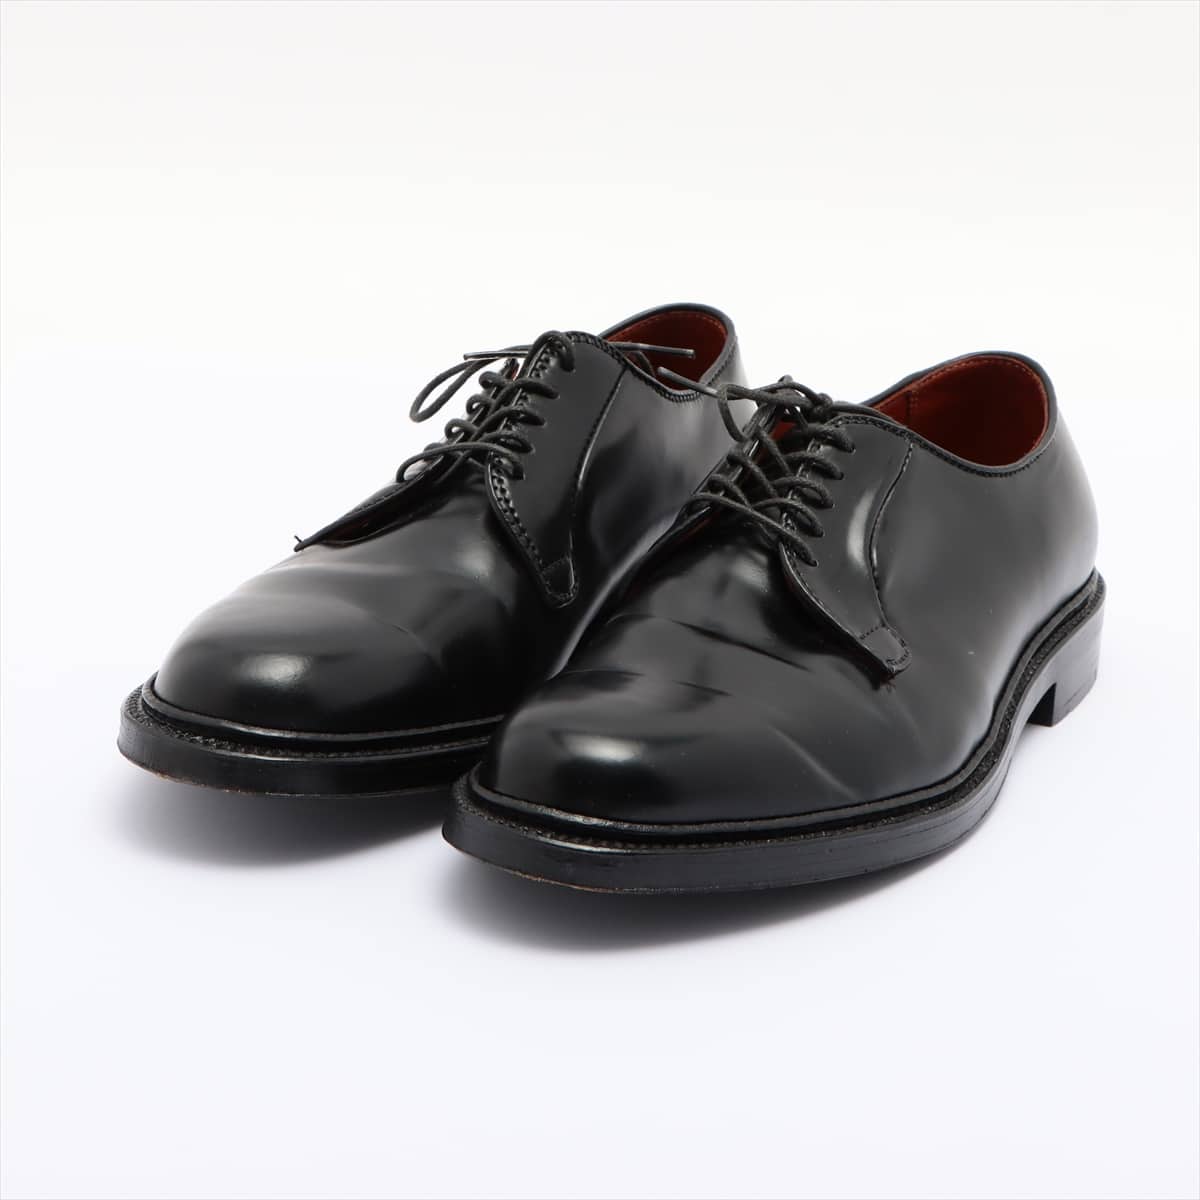 Alden Plain Leather Dress shoes 9 Men's Black